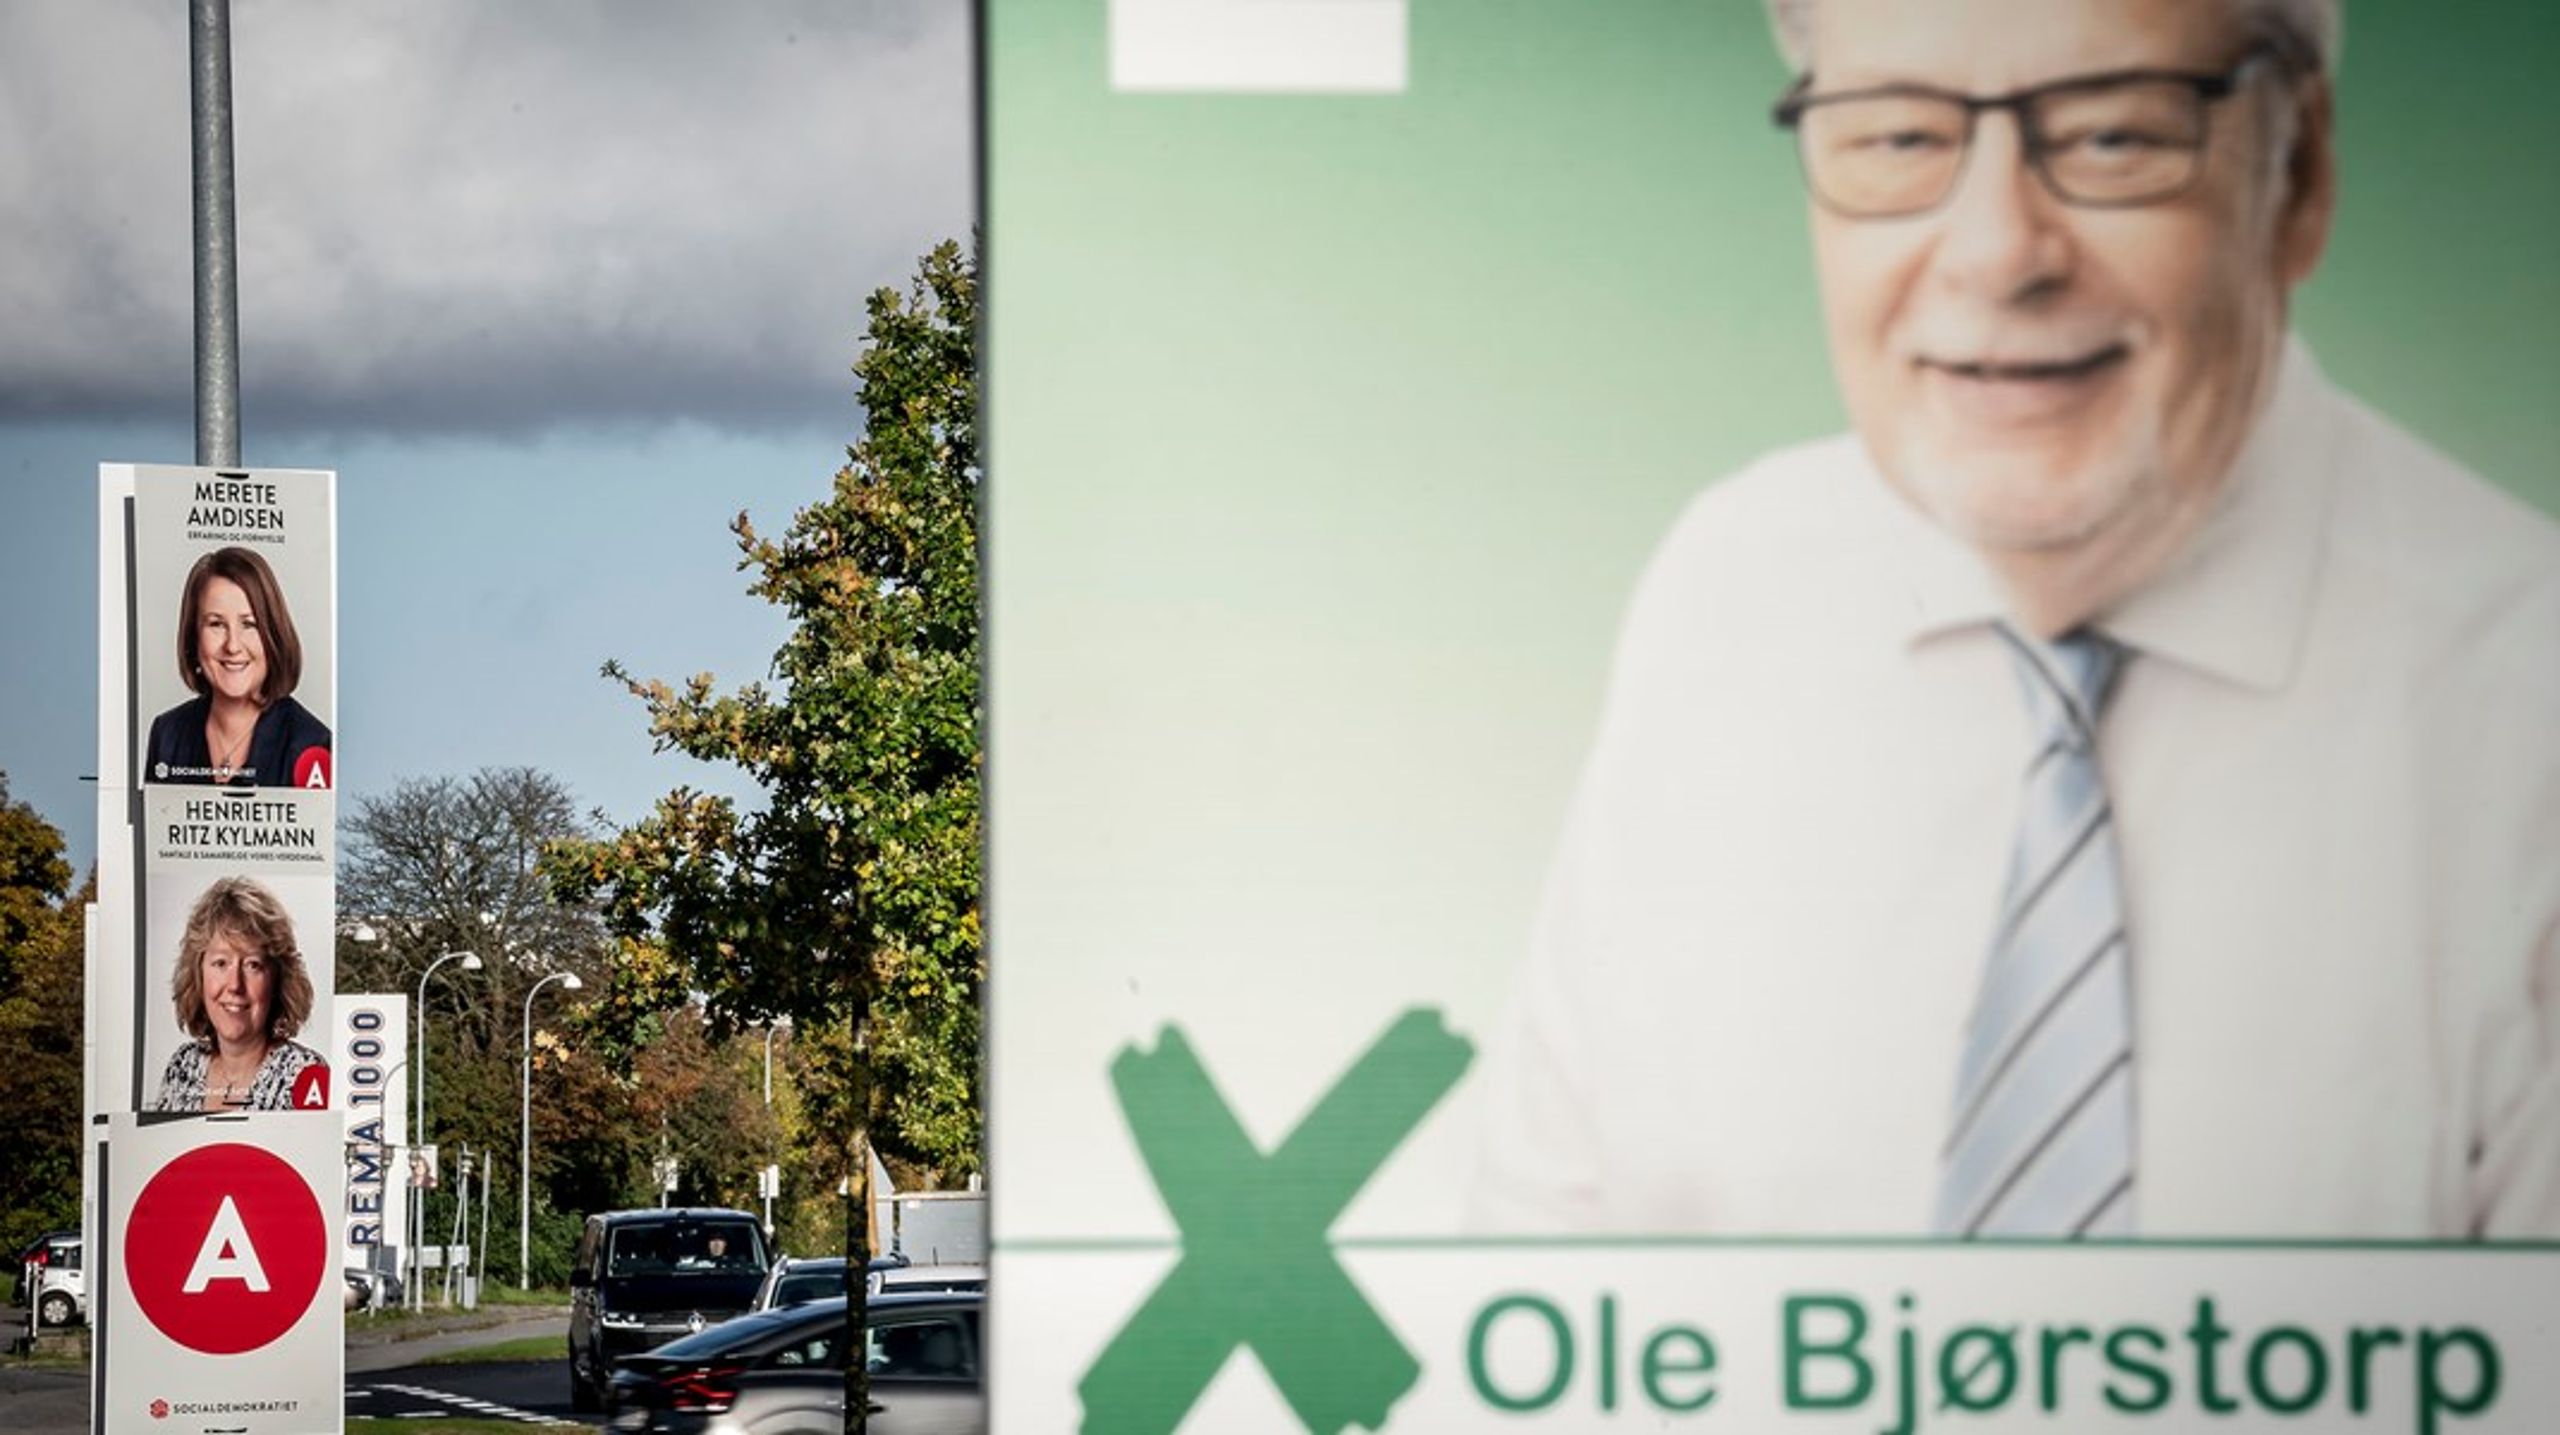 Ishøjs borgmester Ole Bjørstorp har foladt Socialdemokratiet og kæmper nu for at undgå ufrivillig pension med asfæt i den nye Ishøjlisten.